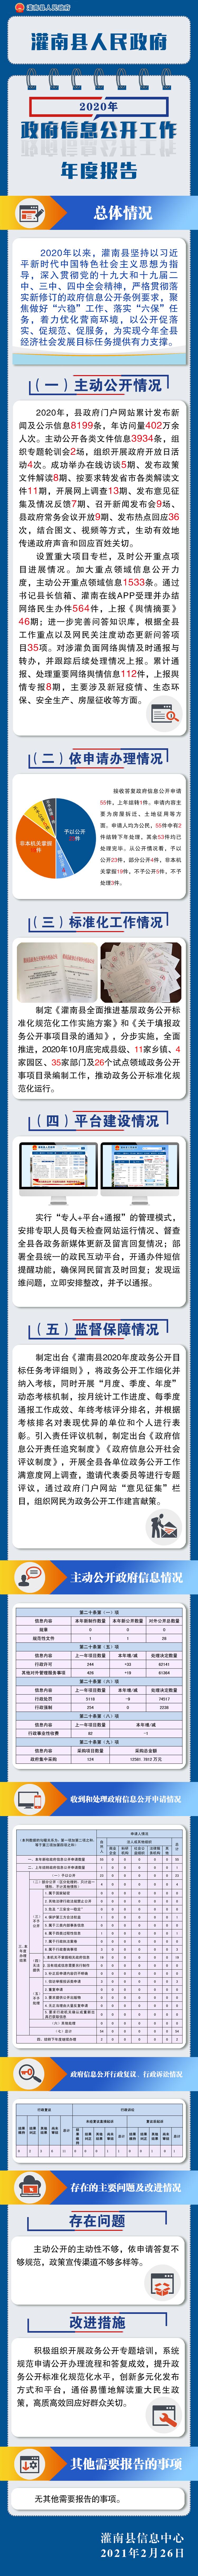 灌南县人民政府2020年政府信息公开工作年度报告.jpg